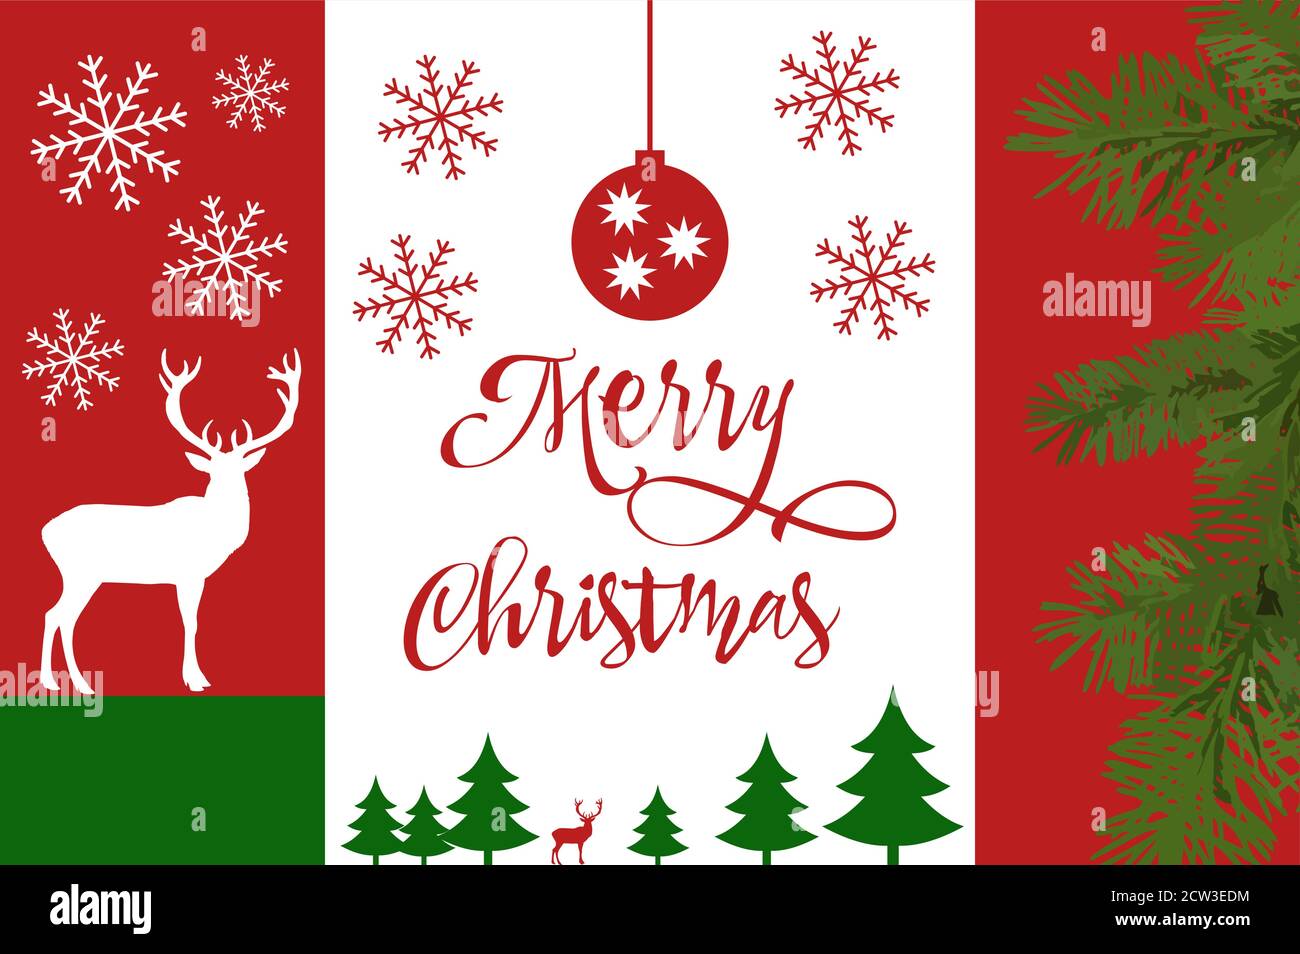 Festa dei cervi, buon Natale e Capodanno tipografico sullo sfondo con paesaggio invernale con fiocchi di neve, luce, stelle. Carta Natale. Vettore Illustrazione Vettoriale